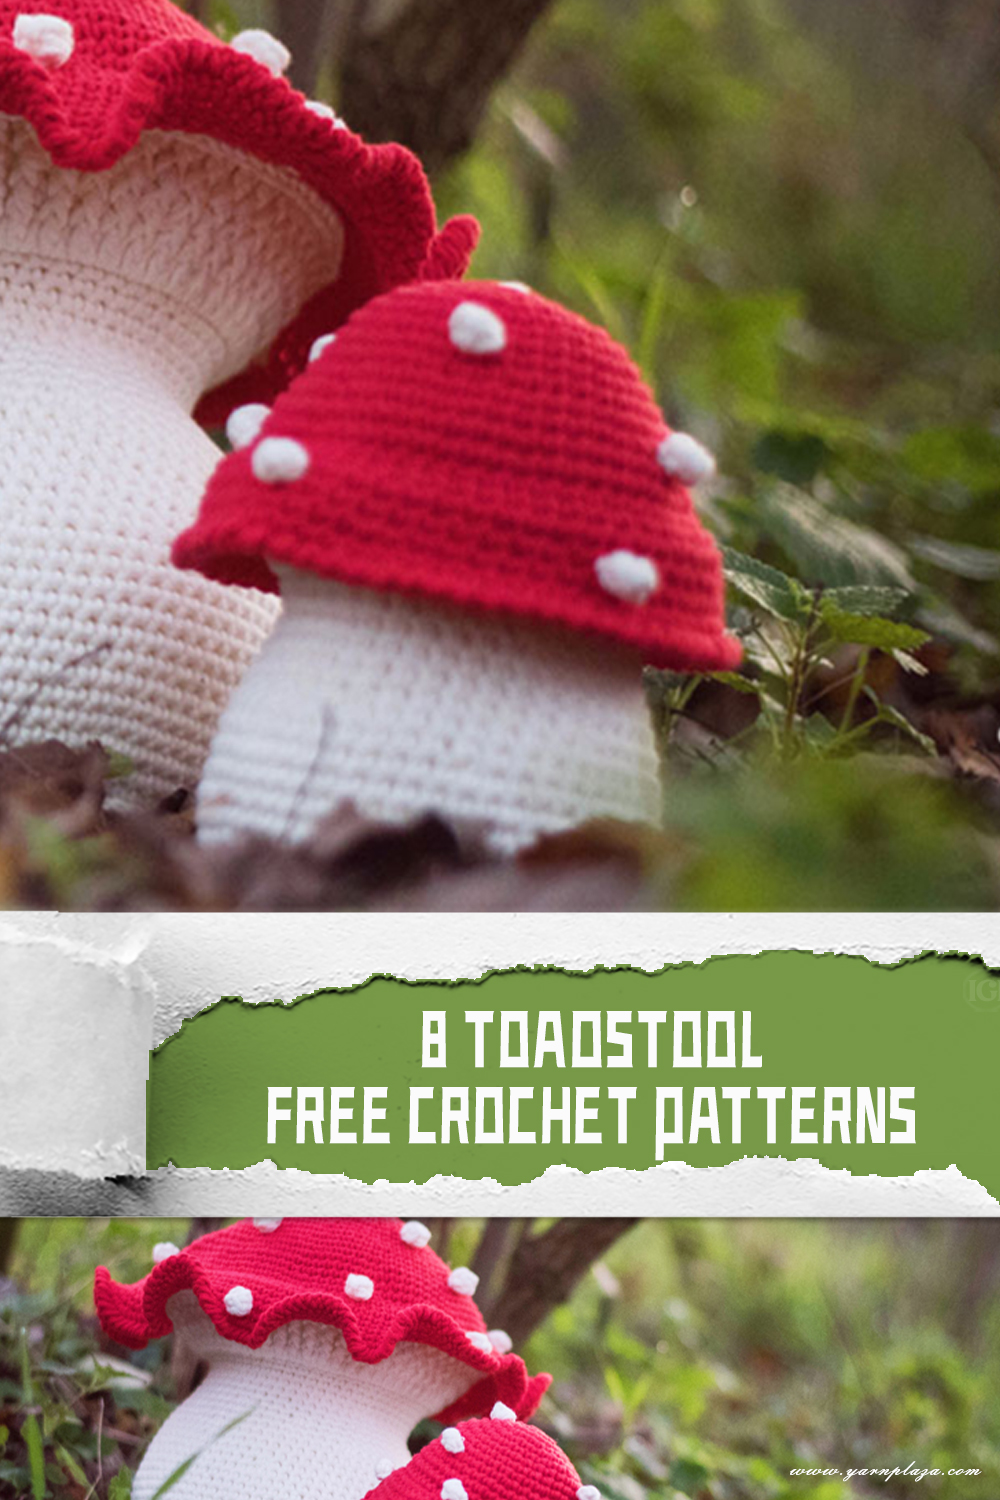 8 Toadstool FREE Crochet Patterns